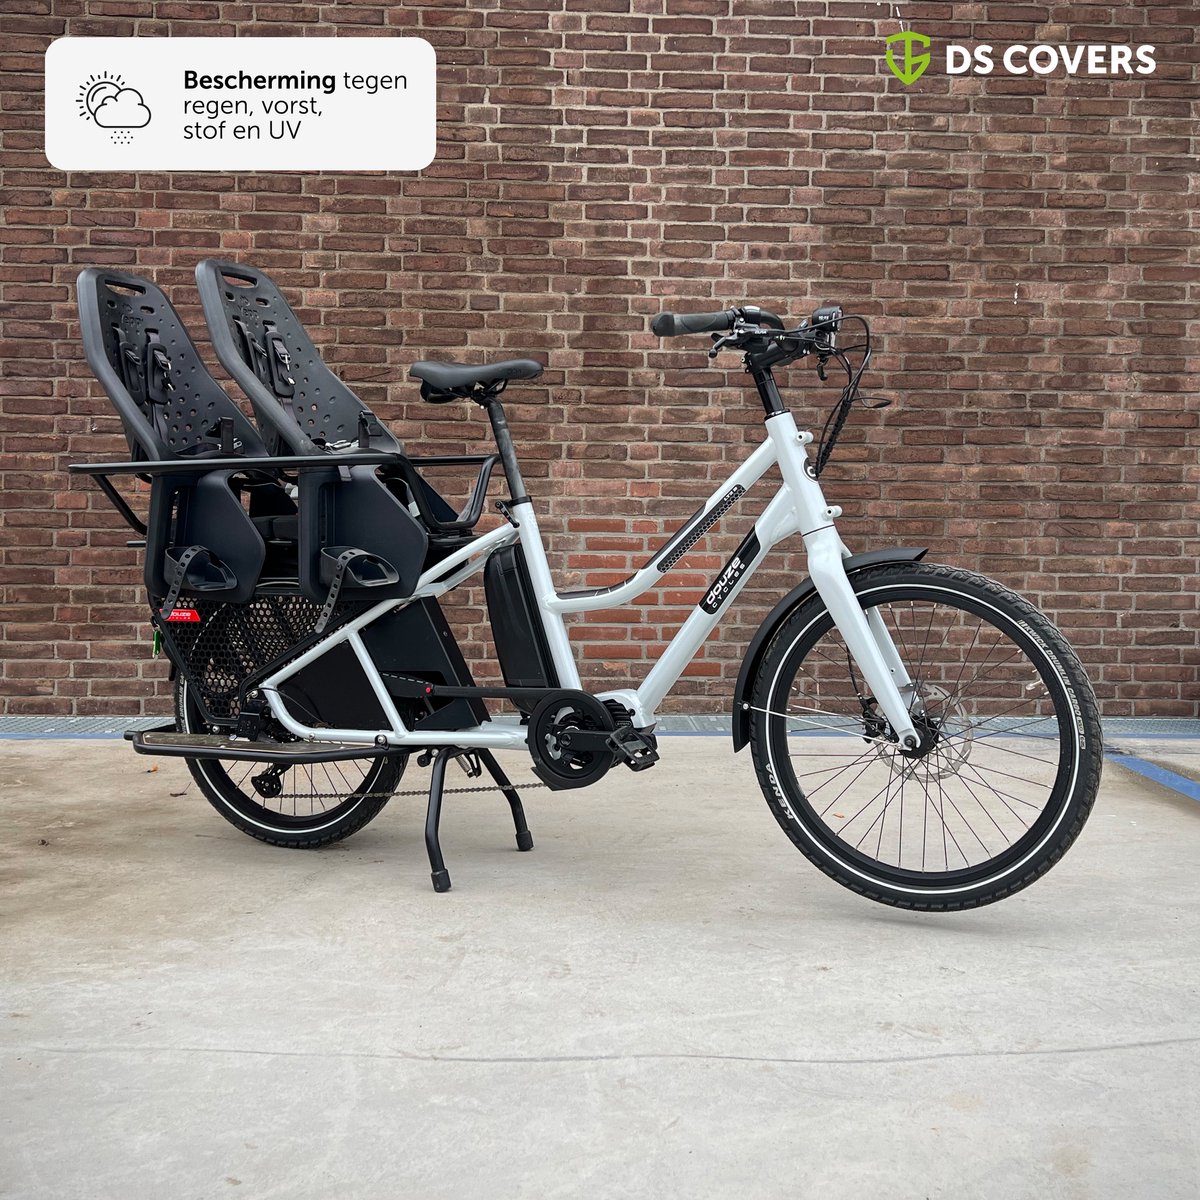 CARGO LONGTAIL bakfietshoes van DS COVERS – Outdoor – Waterdicht – UV bescherming – 300D Oxford – geschikt voor Longtail 2 wielers – Incl. Opbergzak